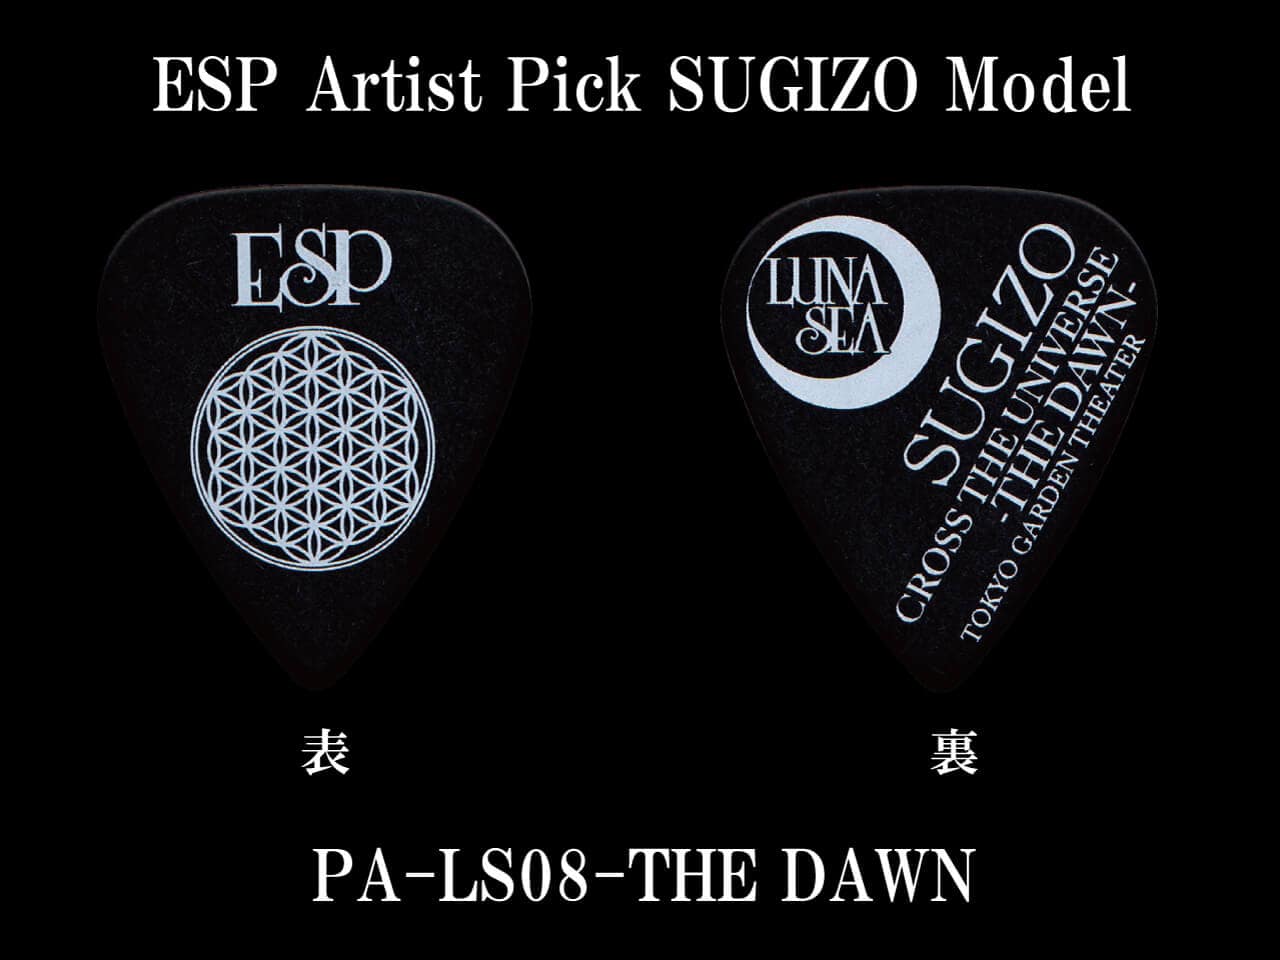 ESP(イーエスピー) Artist Pick Series PA-LS08-THE DAWN SUGIZOピック (LUNA SEA/SUGIZOモデル)